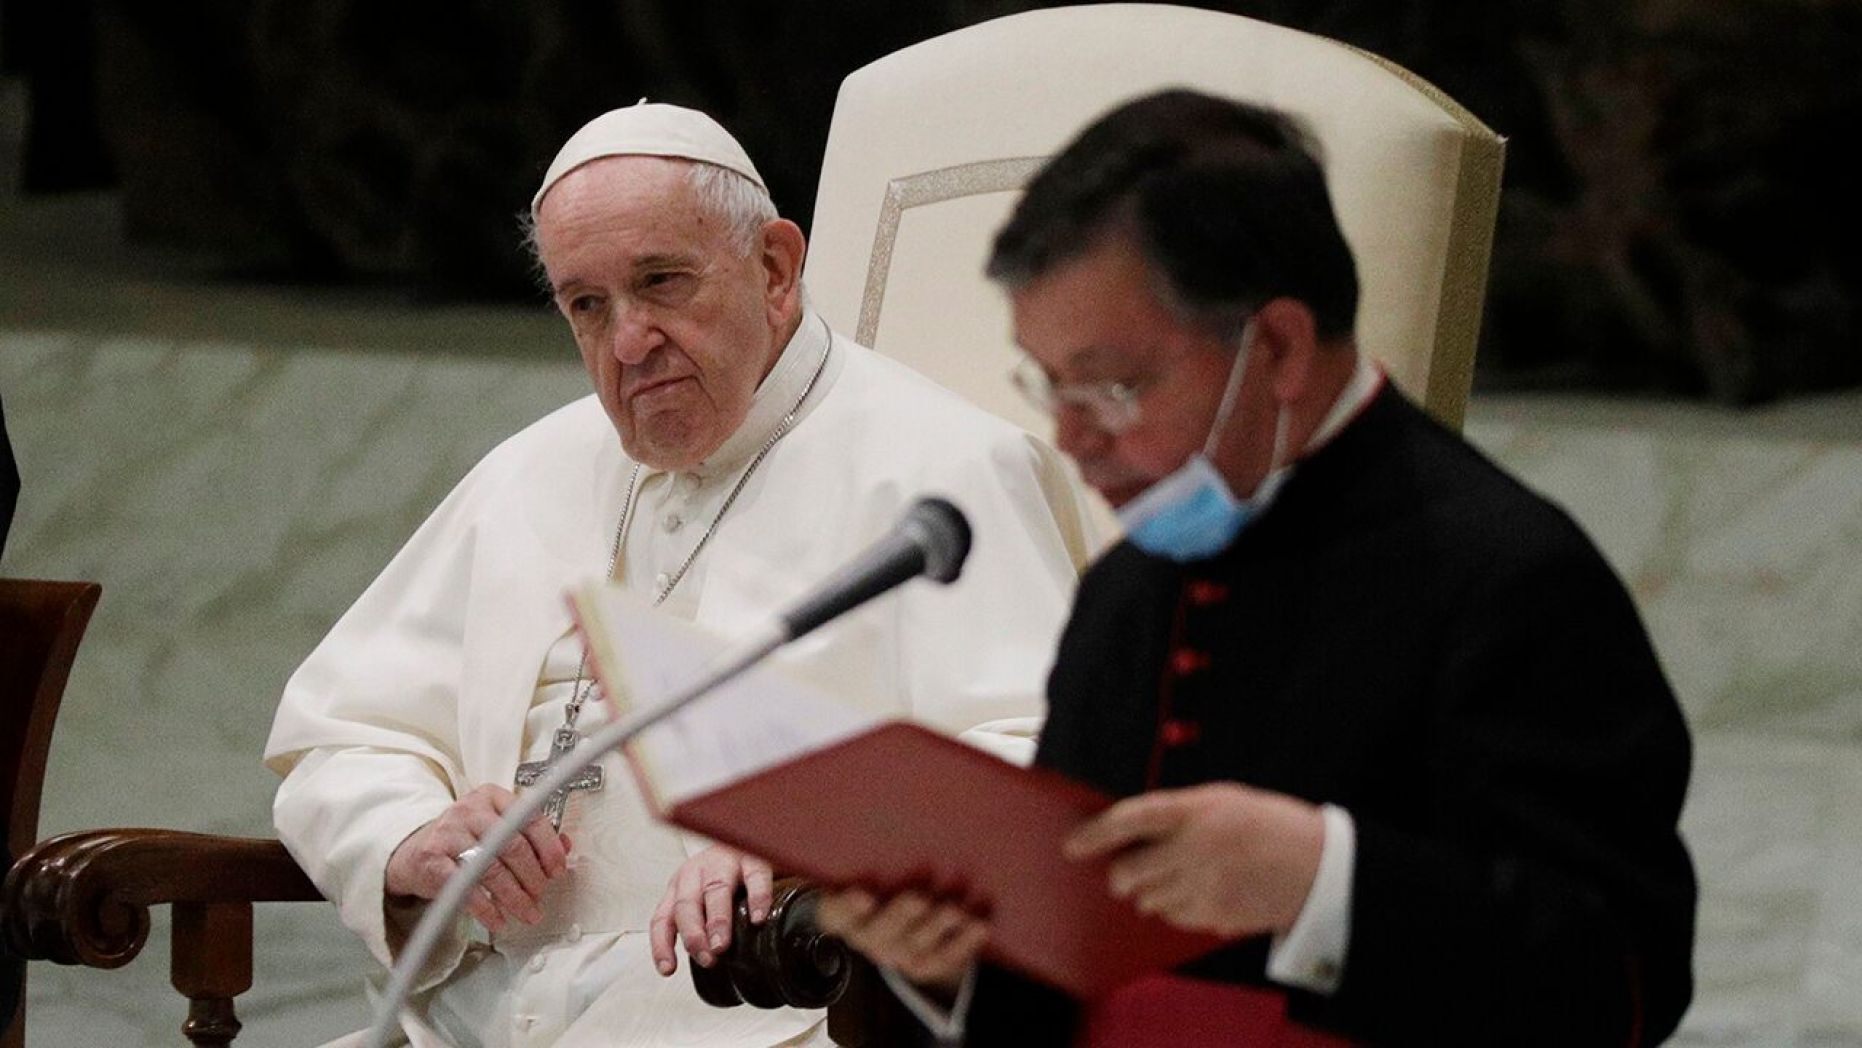 Papa Francisc încalcă reguli și este criticat chiar și de susținătorii săi